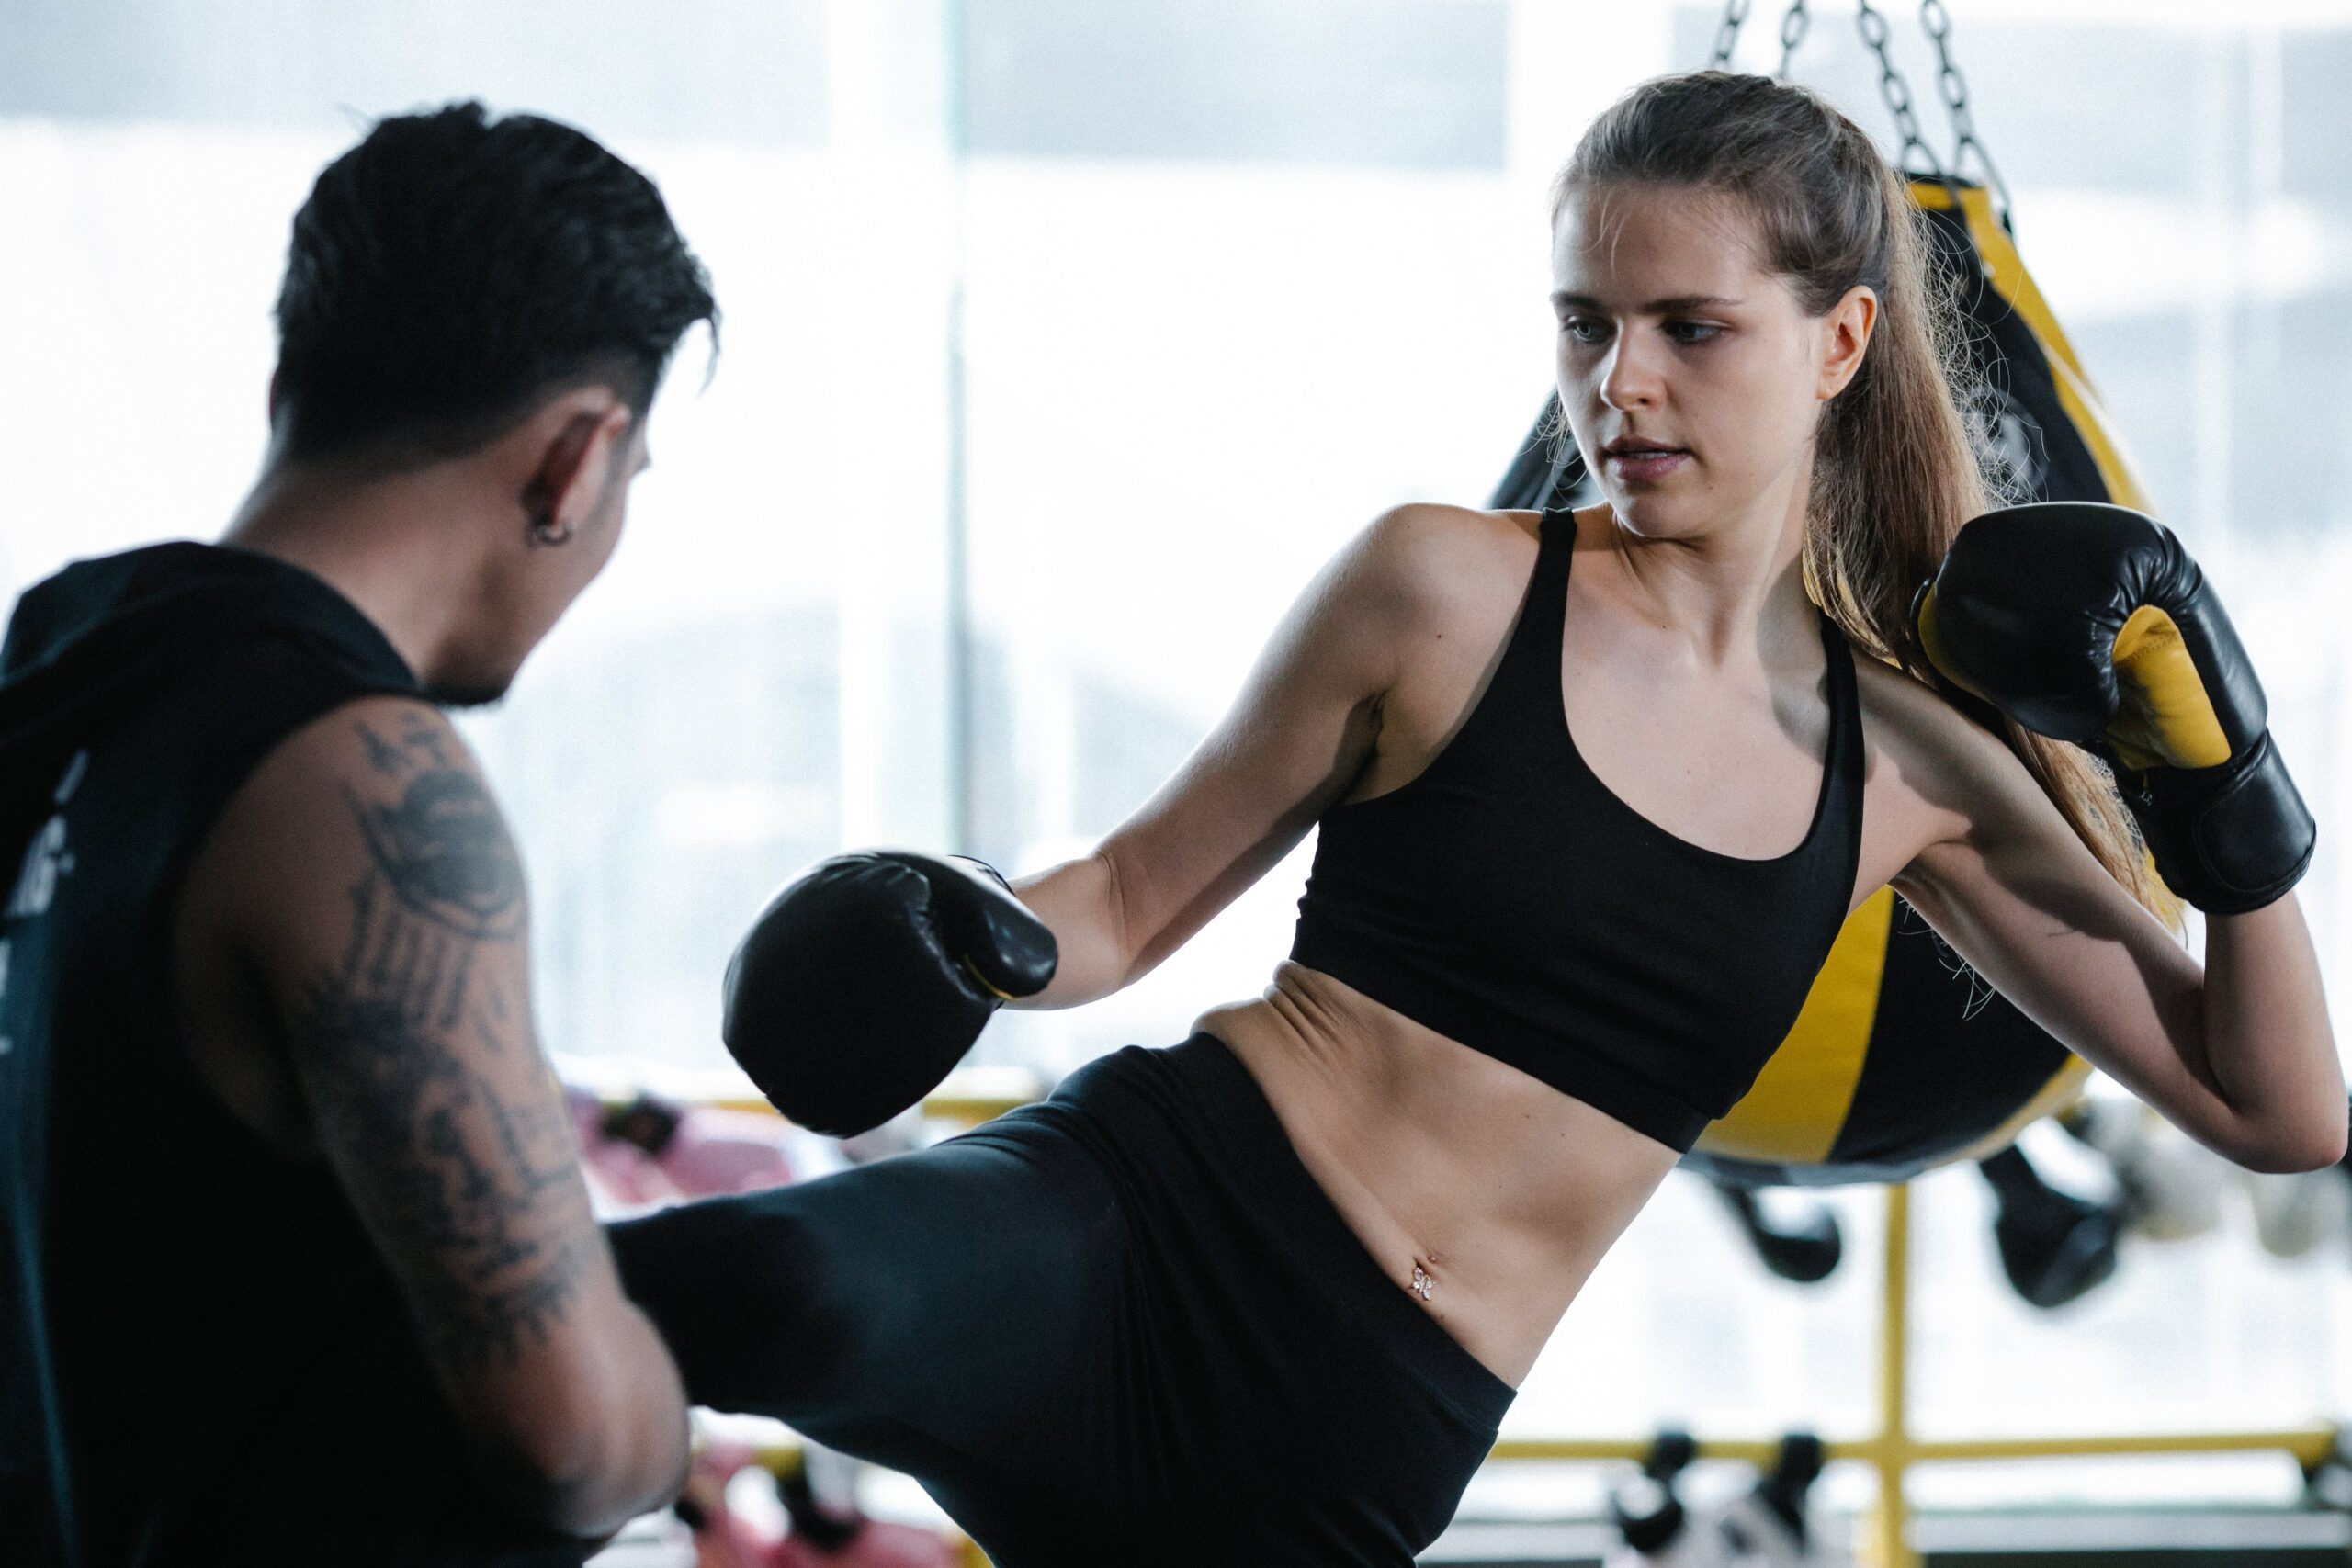 Damski fightwear - czyli w co kobieta może ubrać się na trening